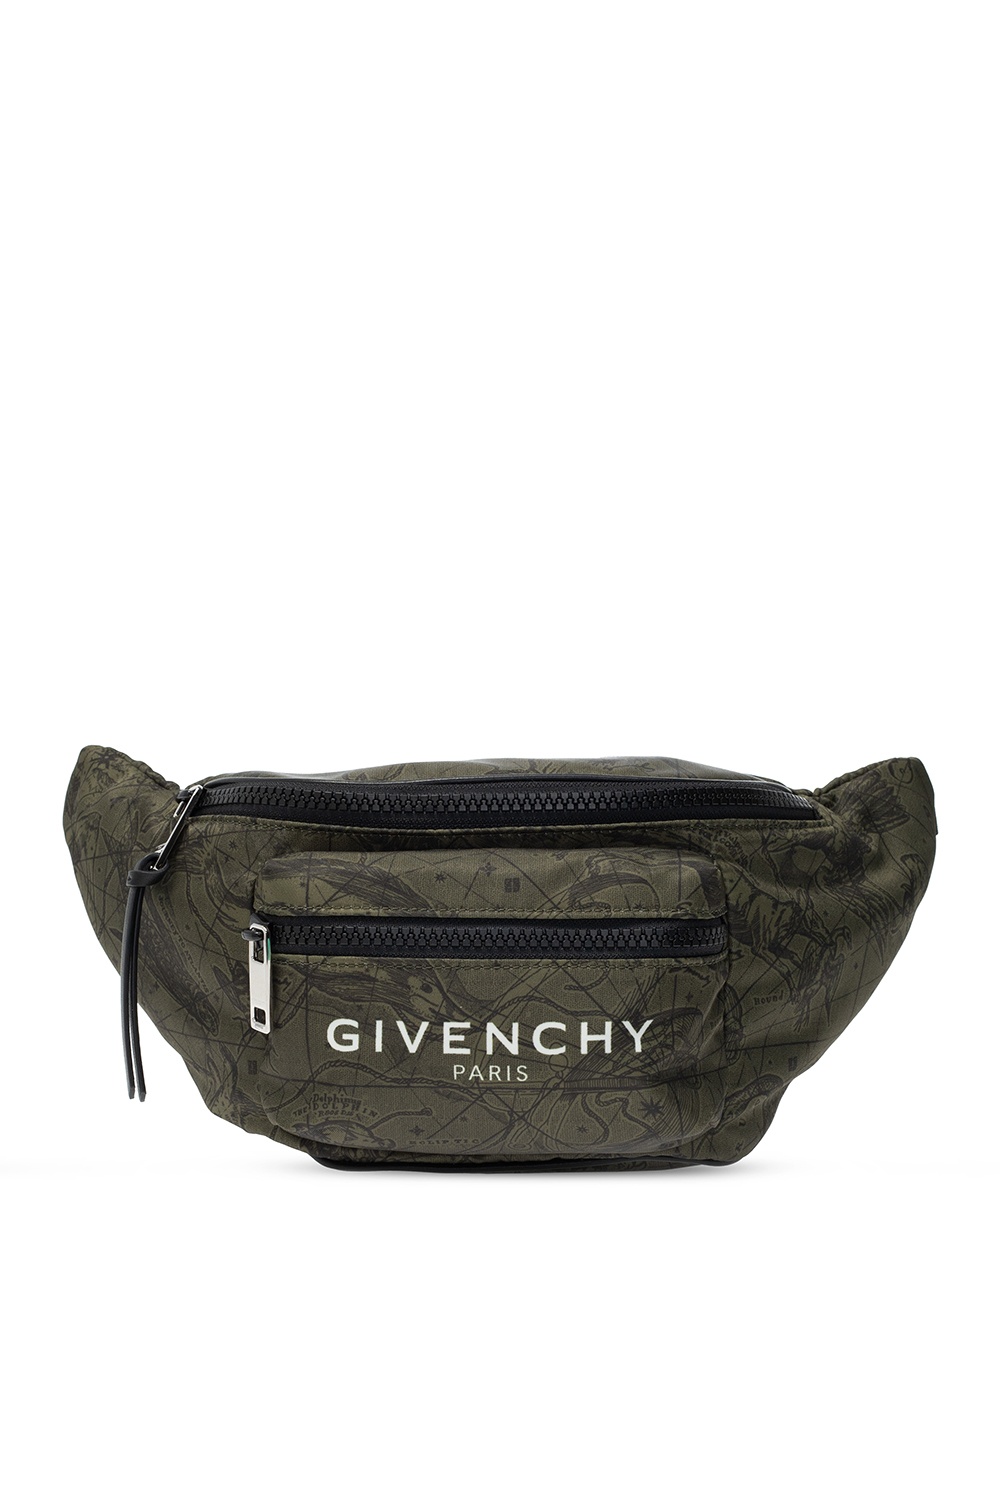 givenchy bag belt